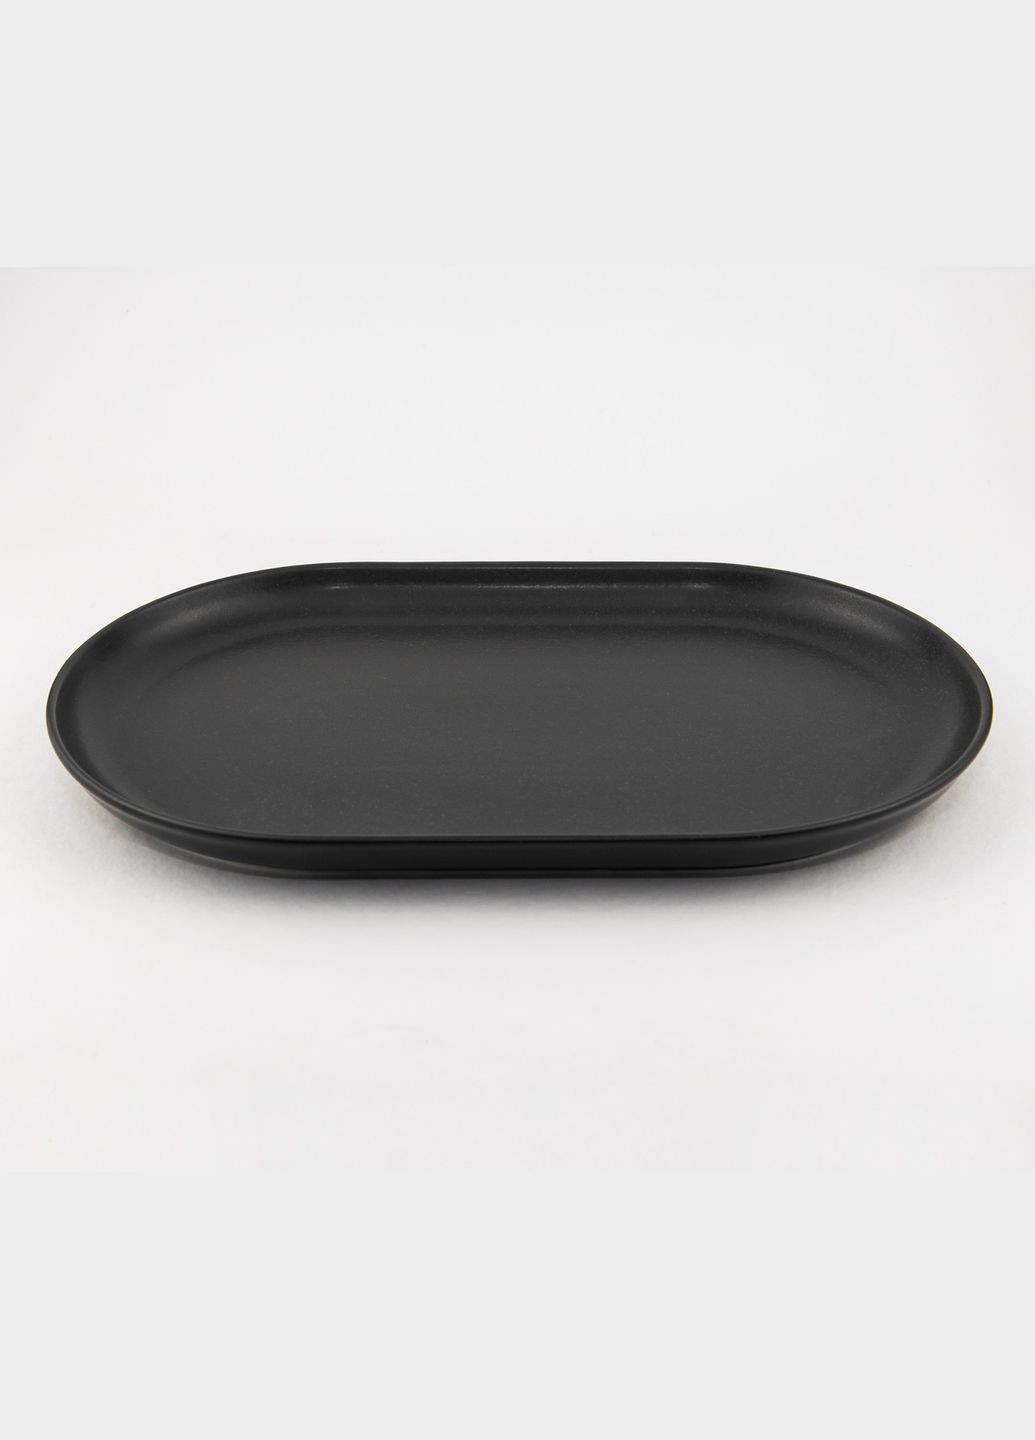 Тарелка овальной формы Seasons Black 118132 32см Черная овальная тарелка Фарфоровая овальная тарелка Porland (277949170)